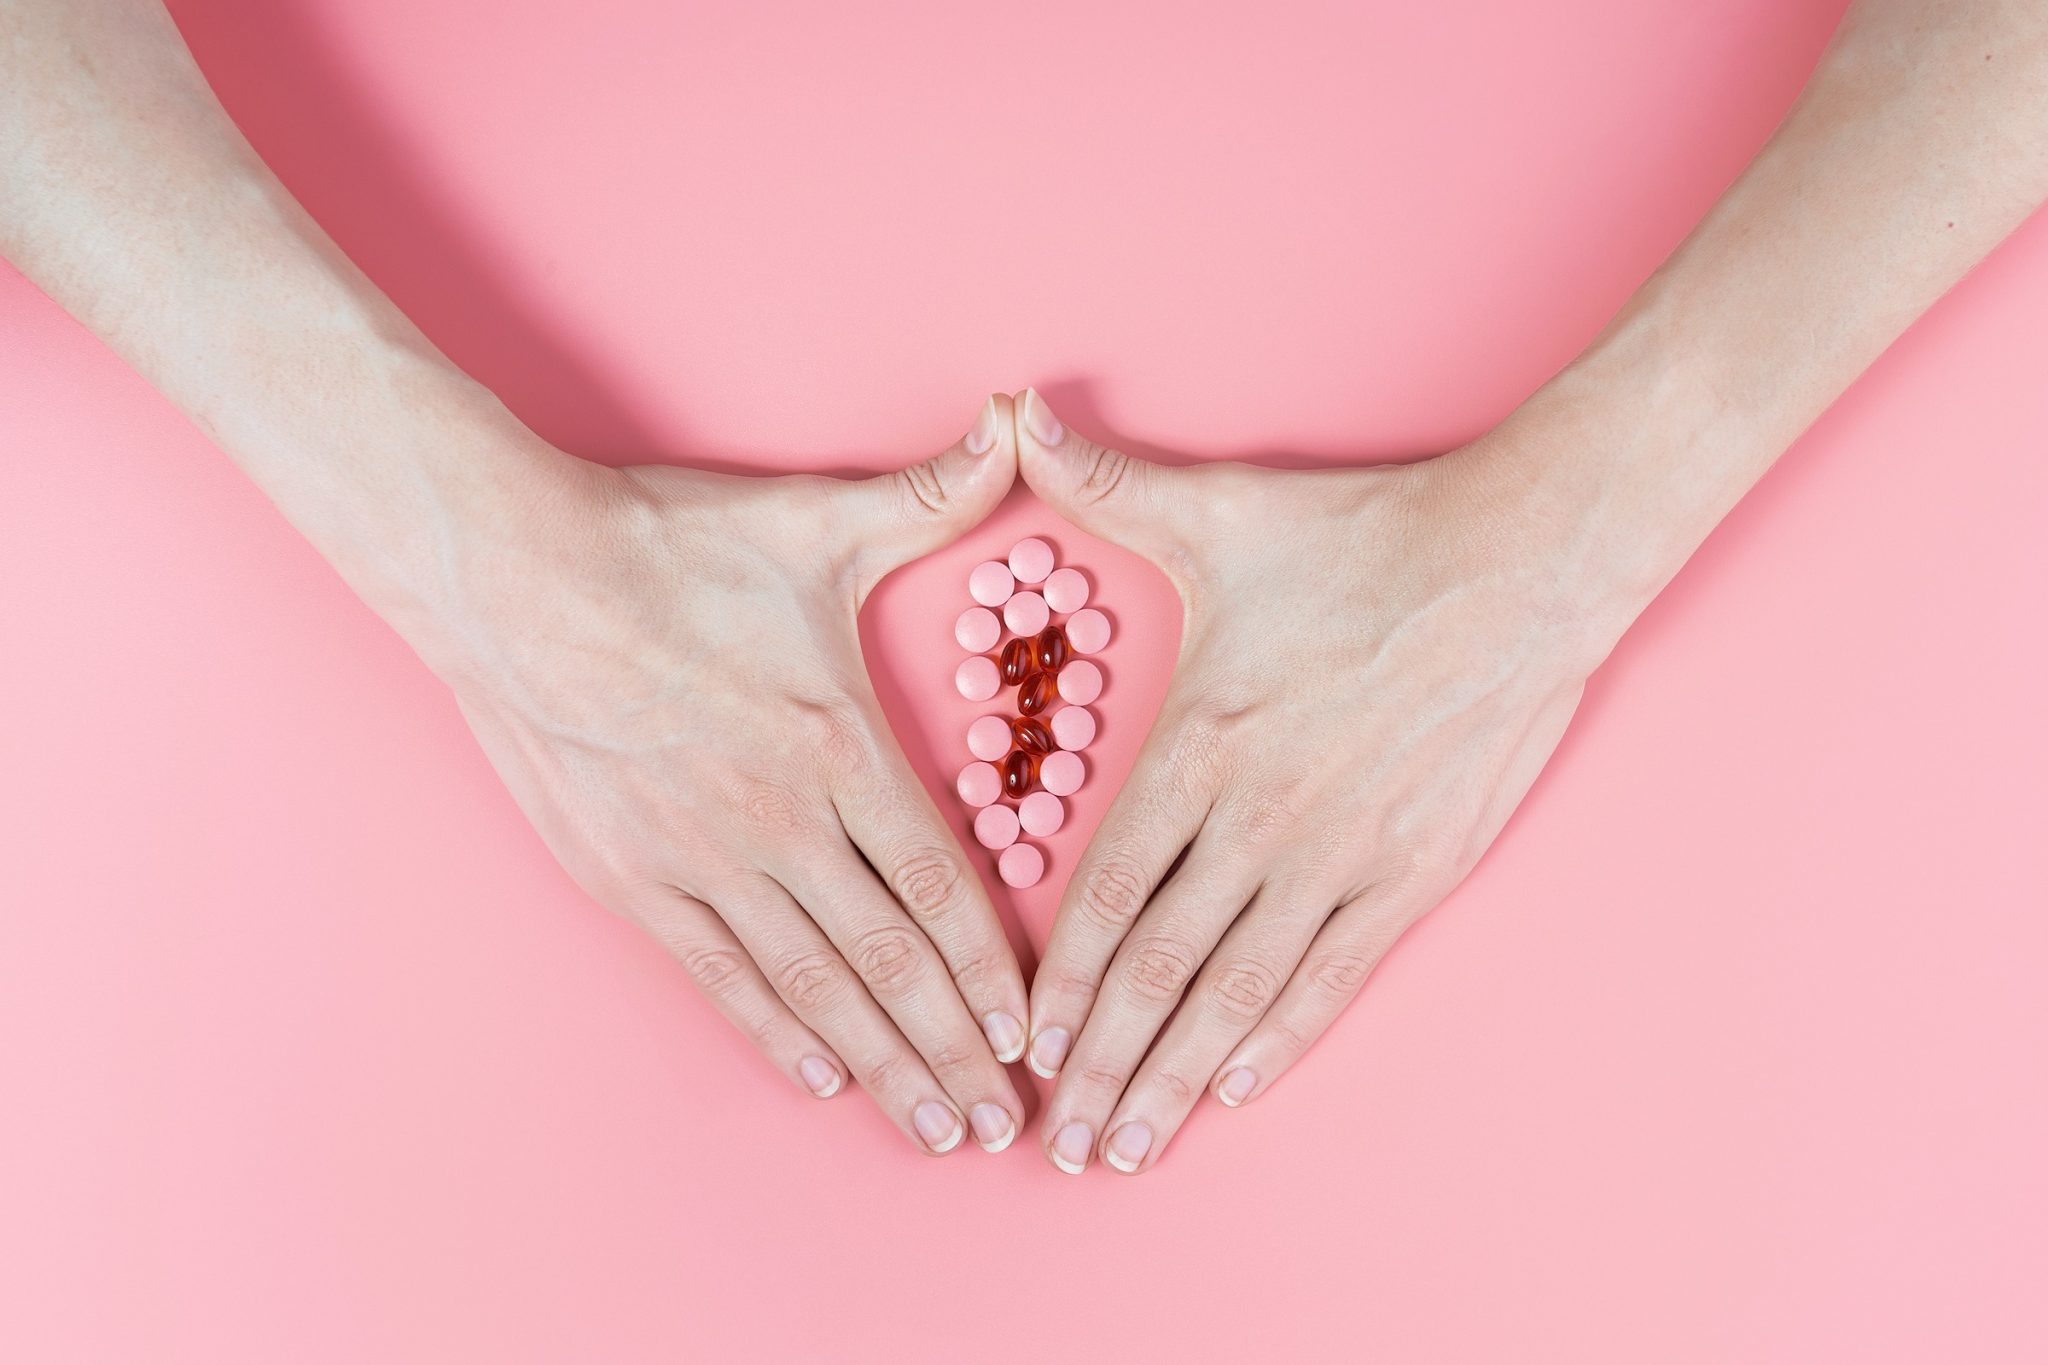 Atrofia Vaginal: Dicas para Tratar e Prevenir os Sintomas da Menopausa